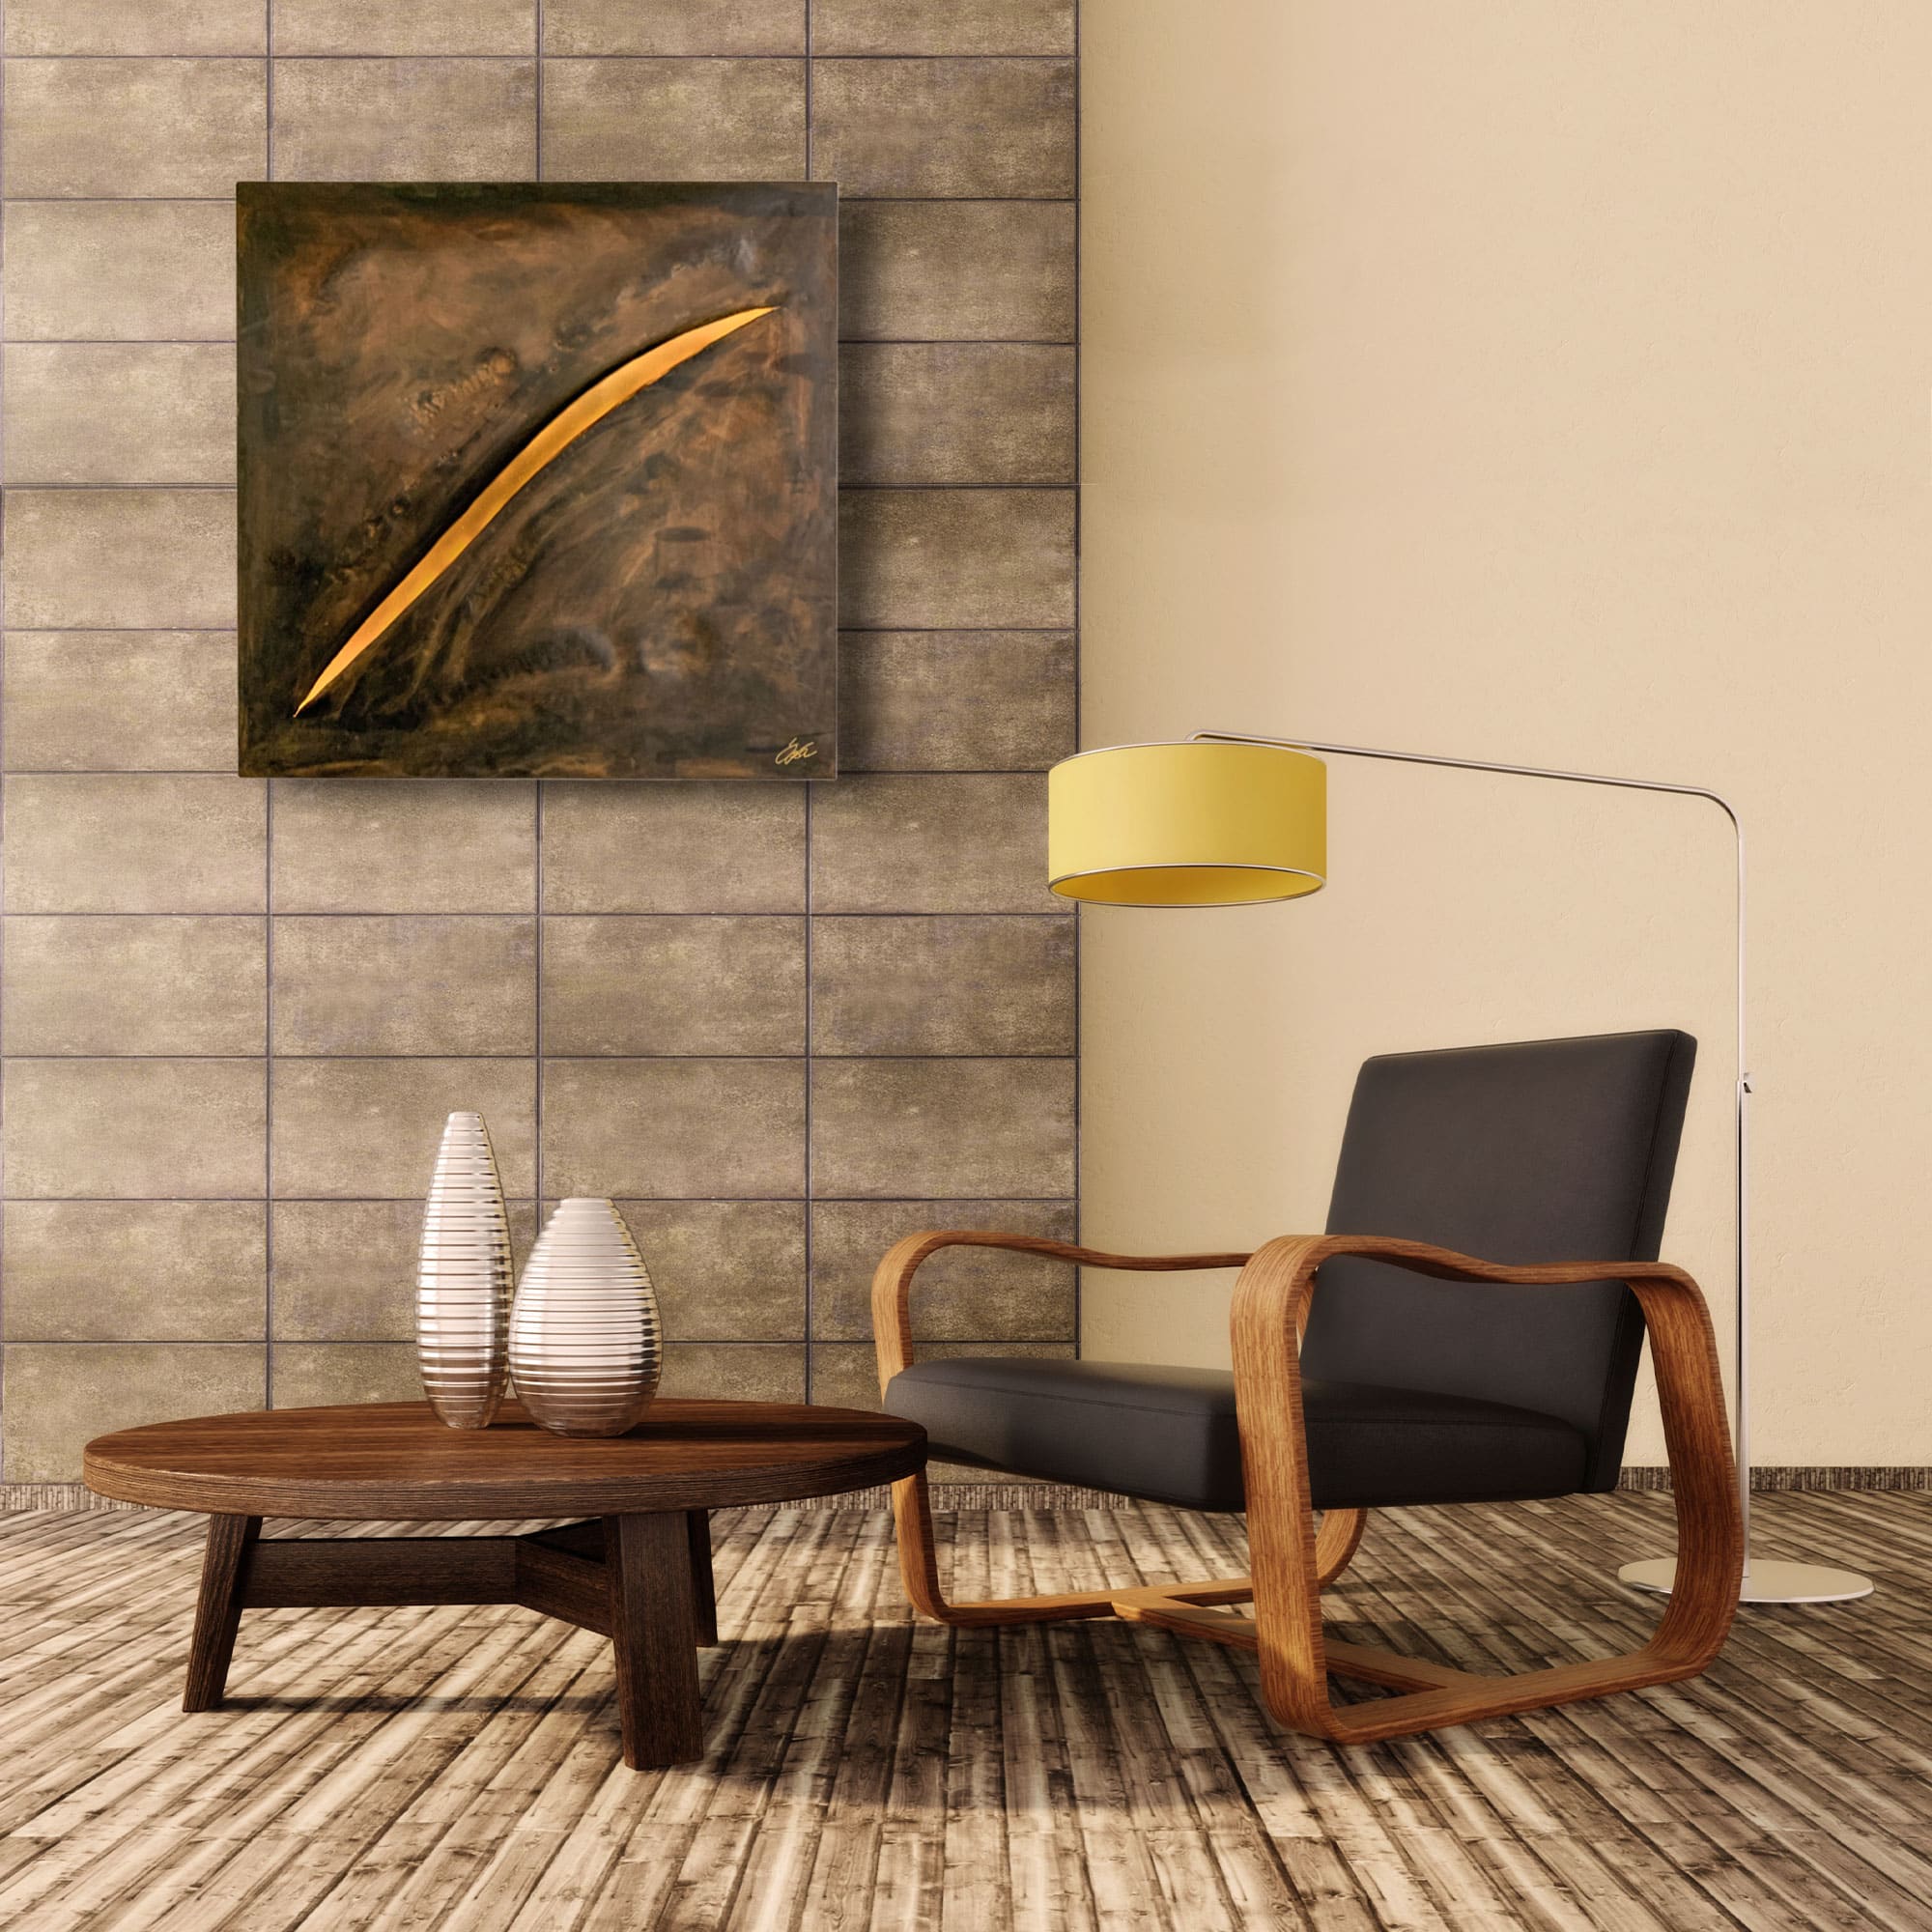 Wohnzimmer Deko - Stahlbild bzw. Bild aus Metall mit dem Namen „Schnitt-1“ aus der Reihe Schnitt von Daniel Springer.